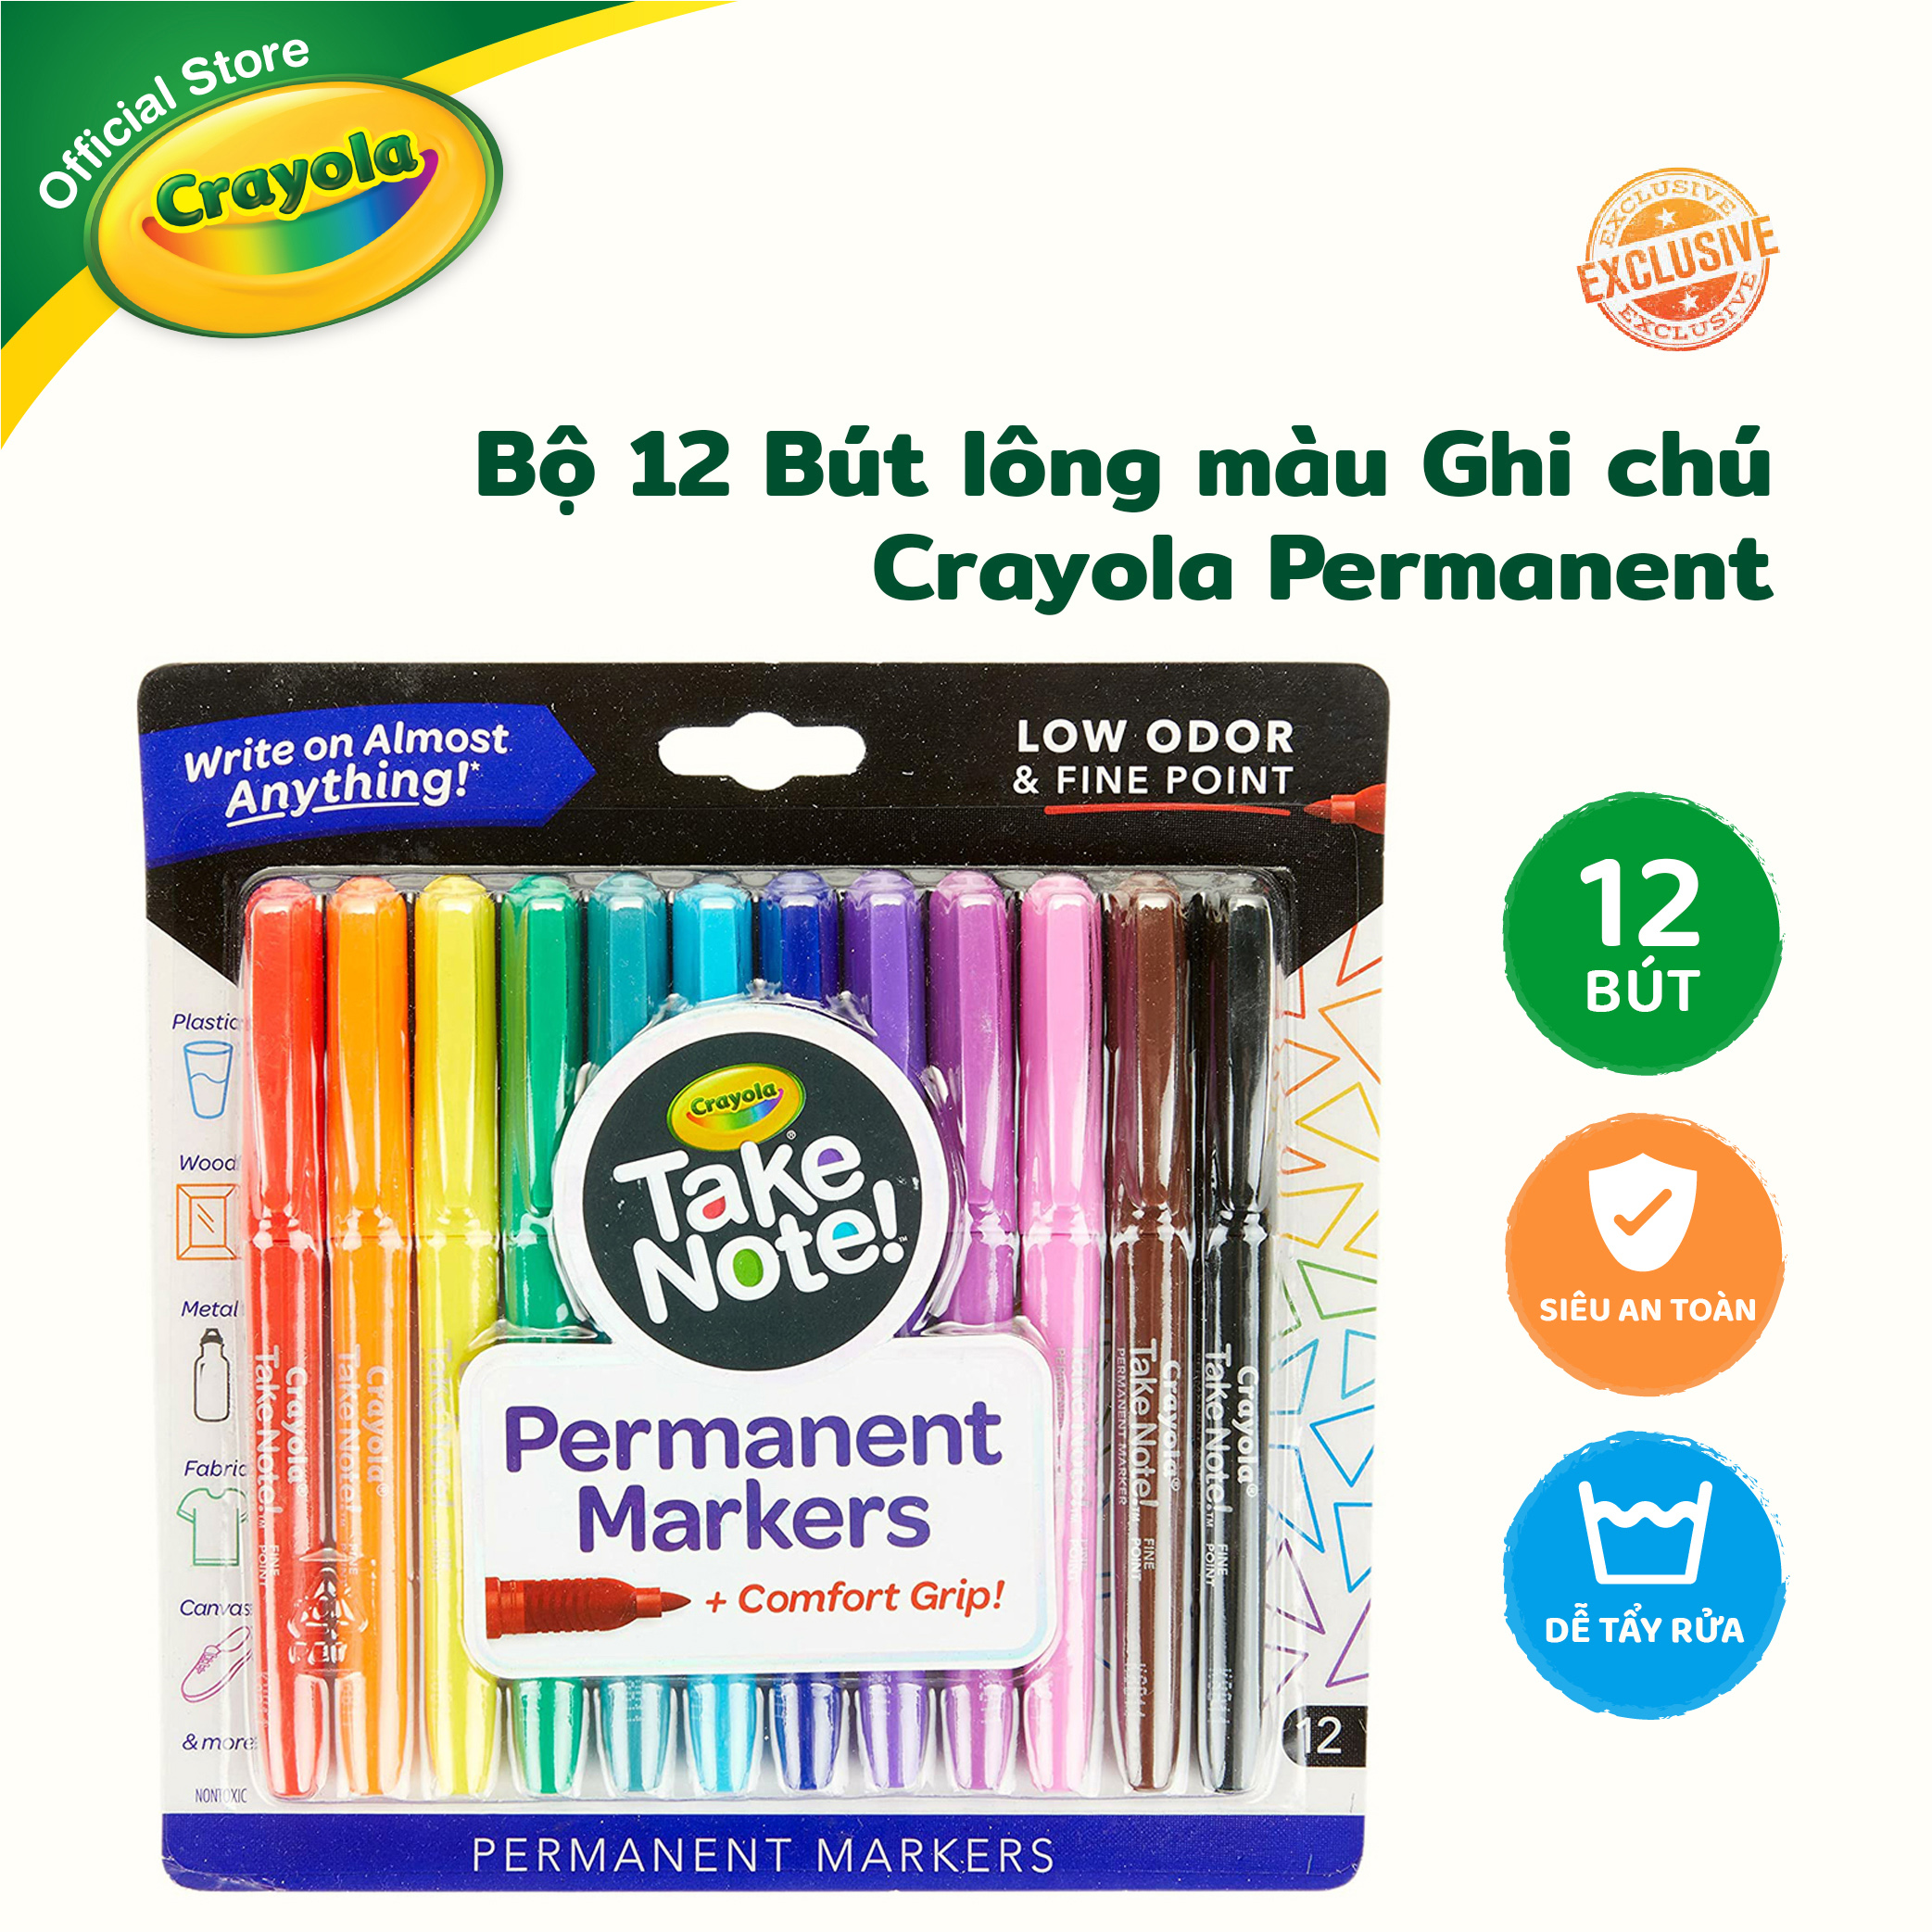 Bộ 12 Bút lông màu Ghi chú Crayola Permanent - 586539